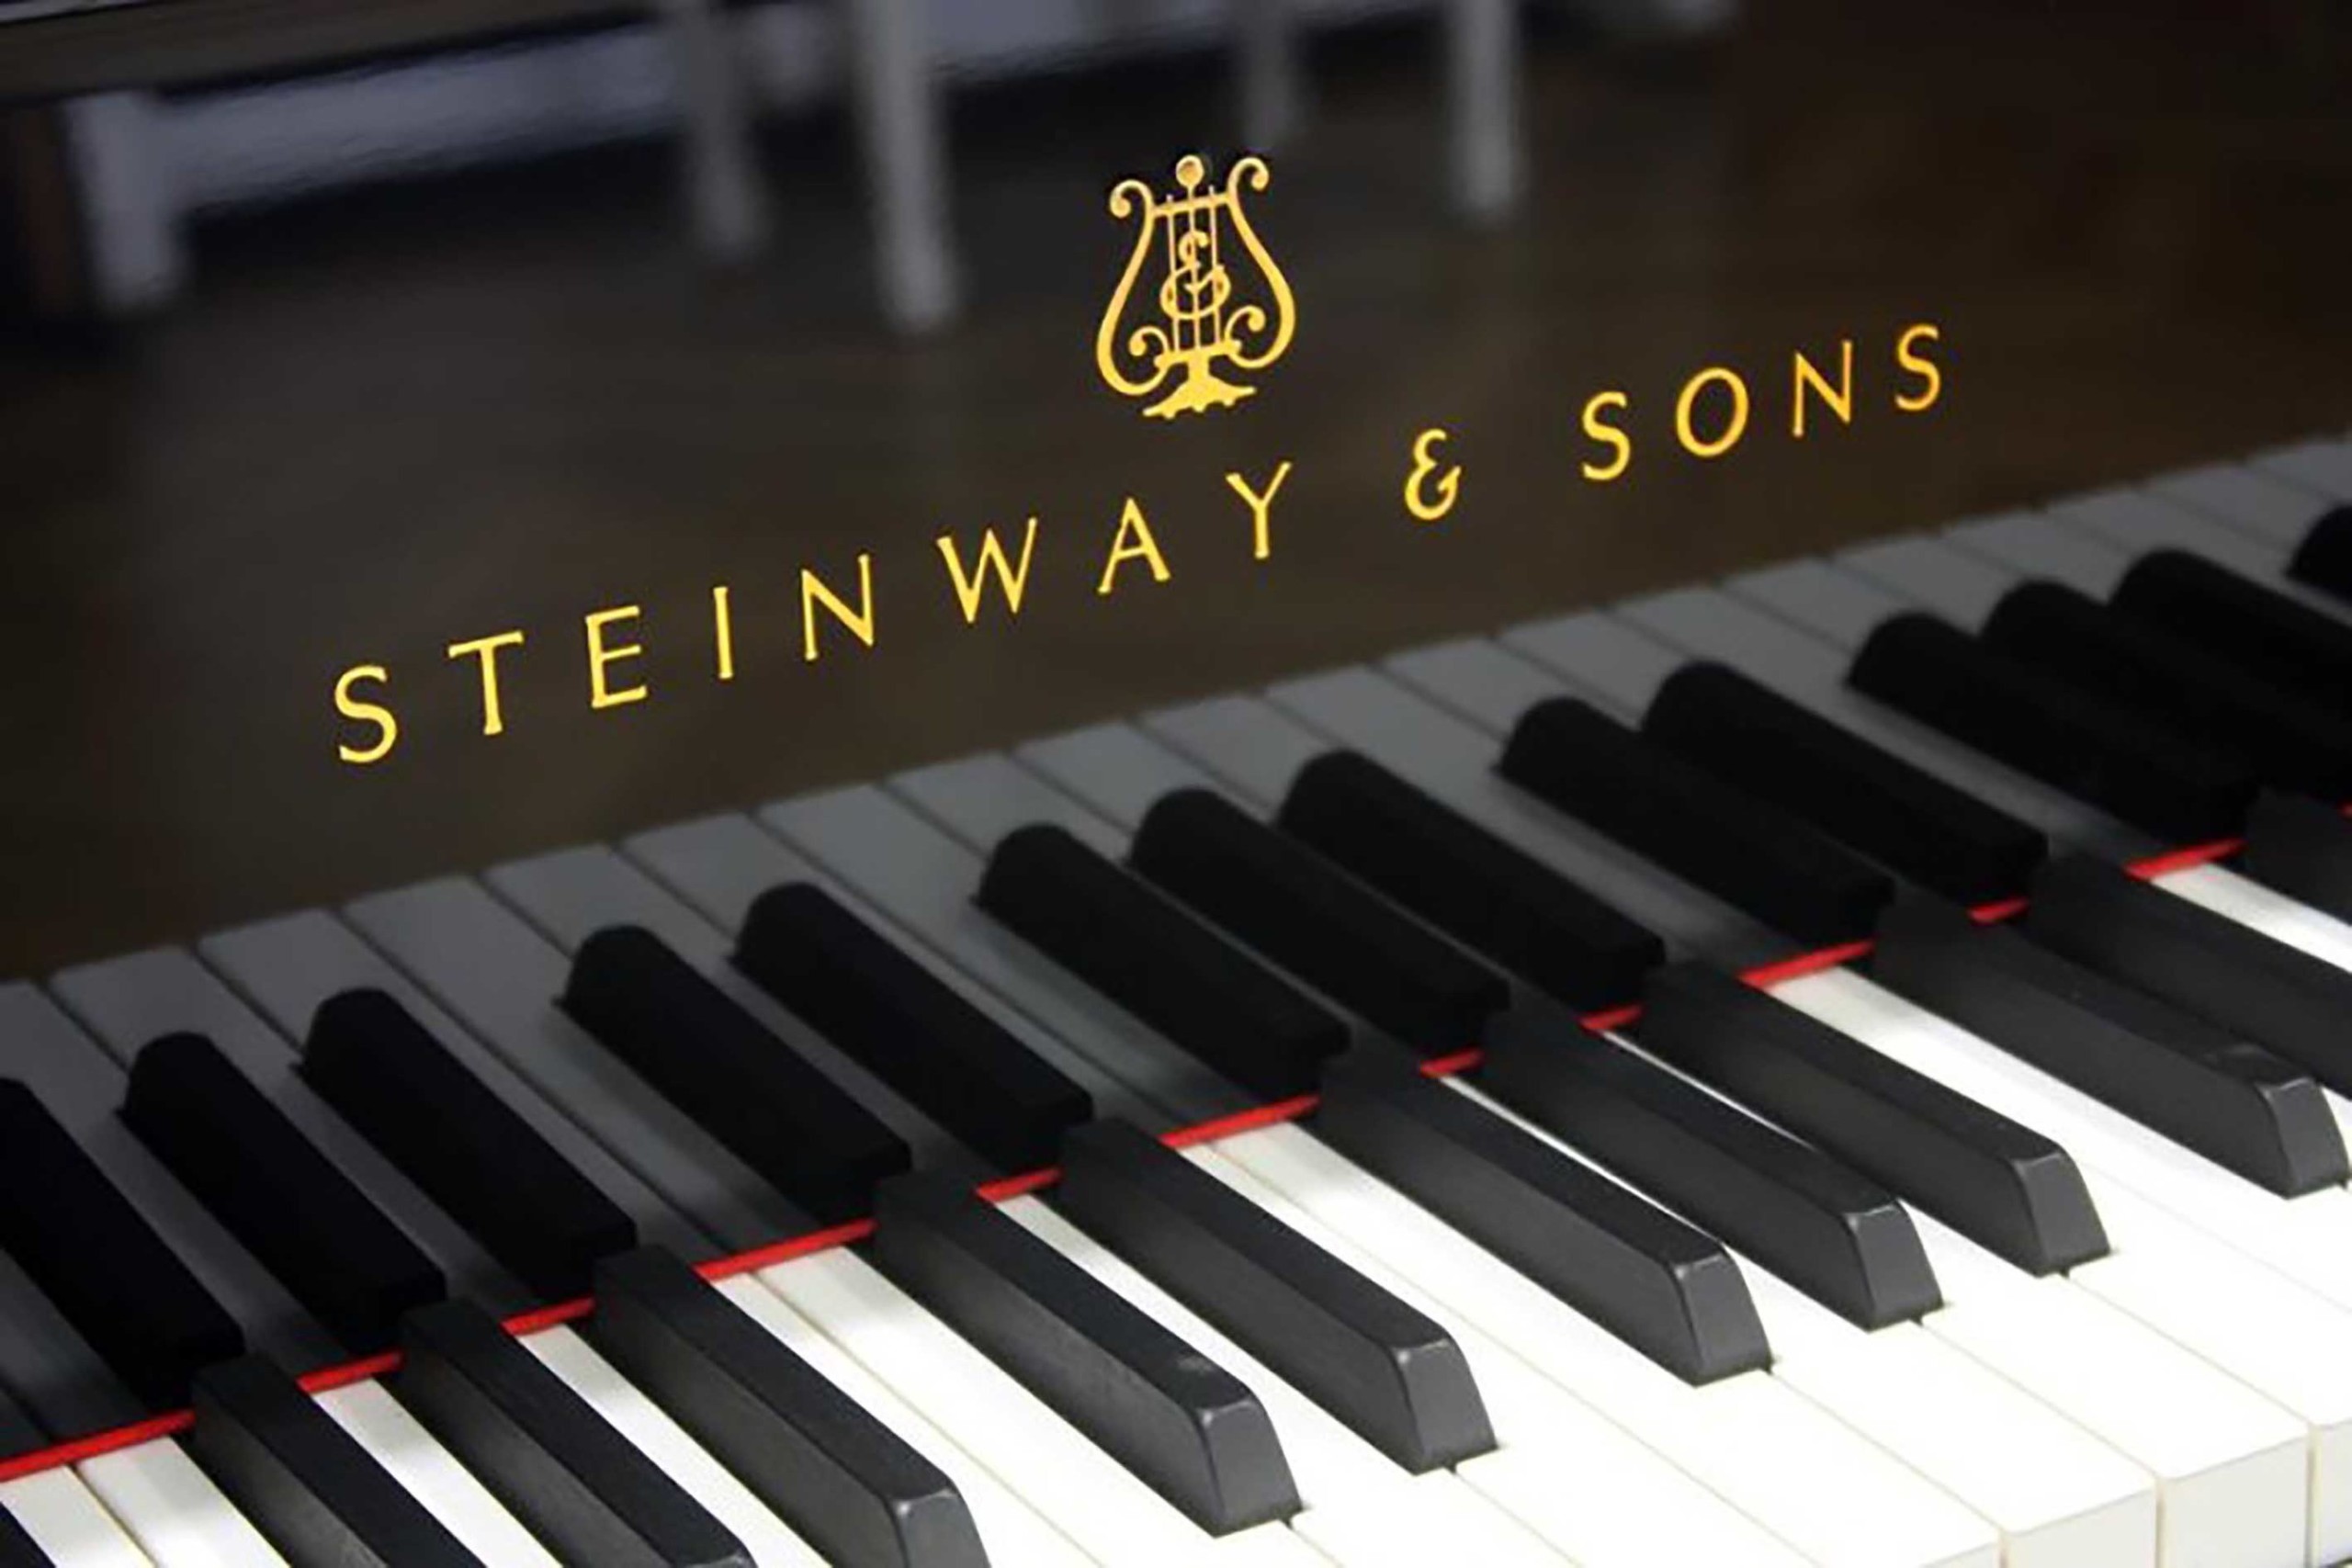 Línea de metal Gran cantidad Disipación Pianos Steinway & Sons en la lista de los mejores pianos del mundo